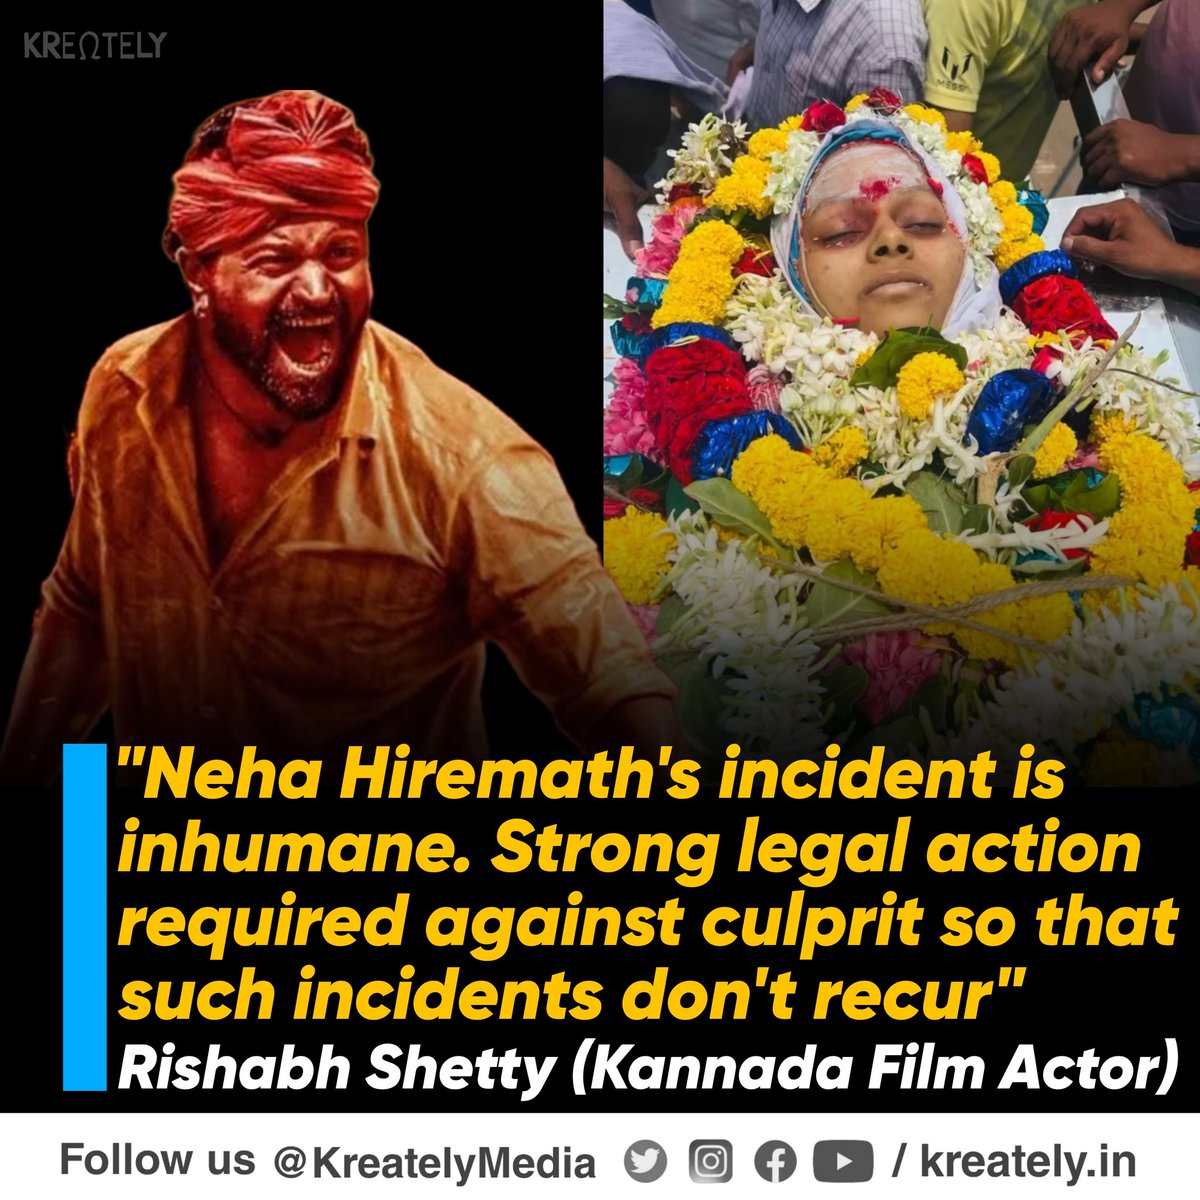 Not a single Bollywoodiya has spoken about this incident

बॉलीवुड वाले को सिर्फ हिंदुओं के पैसे से मतलब है 

#JusticeForNeha